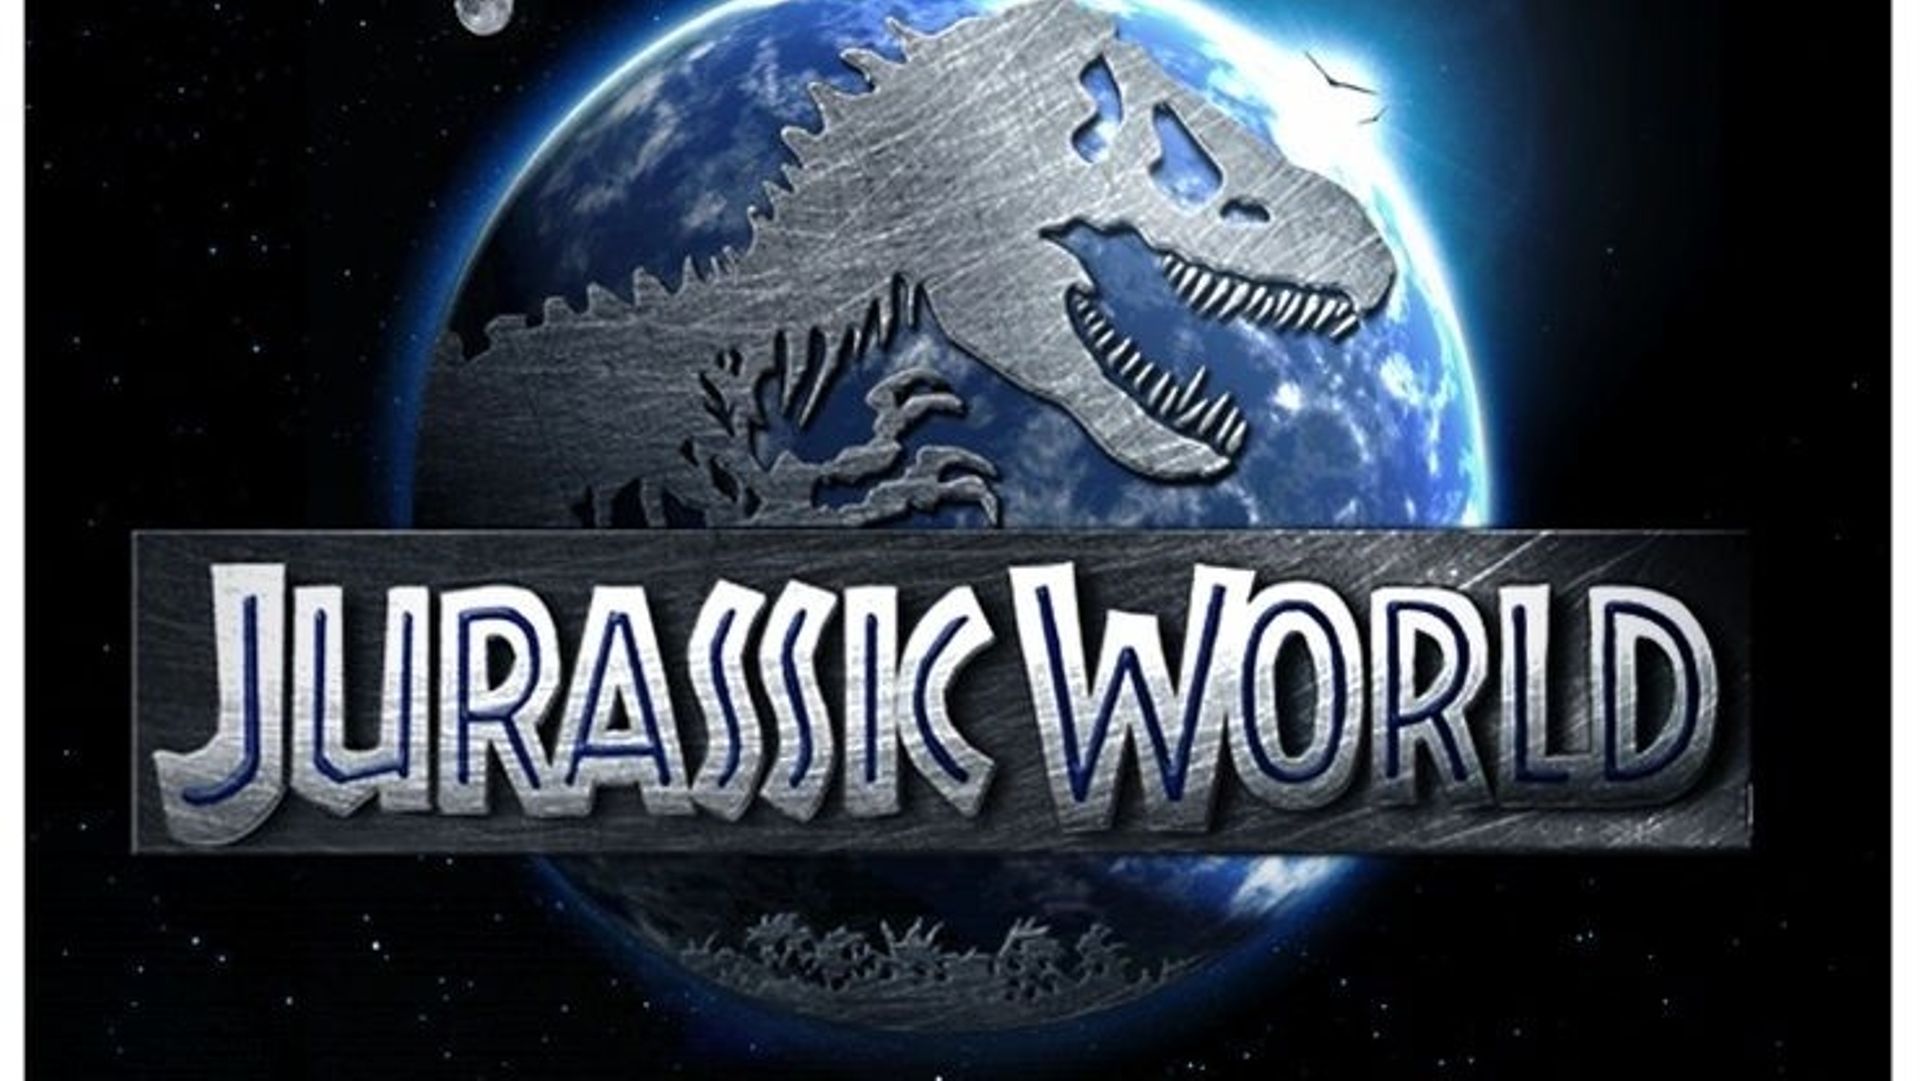 Le casting de "Jurassic World" s'étoffe un peu plus